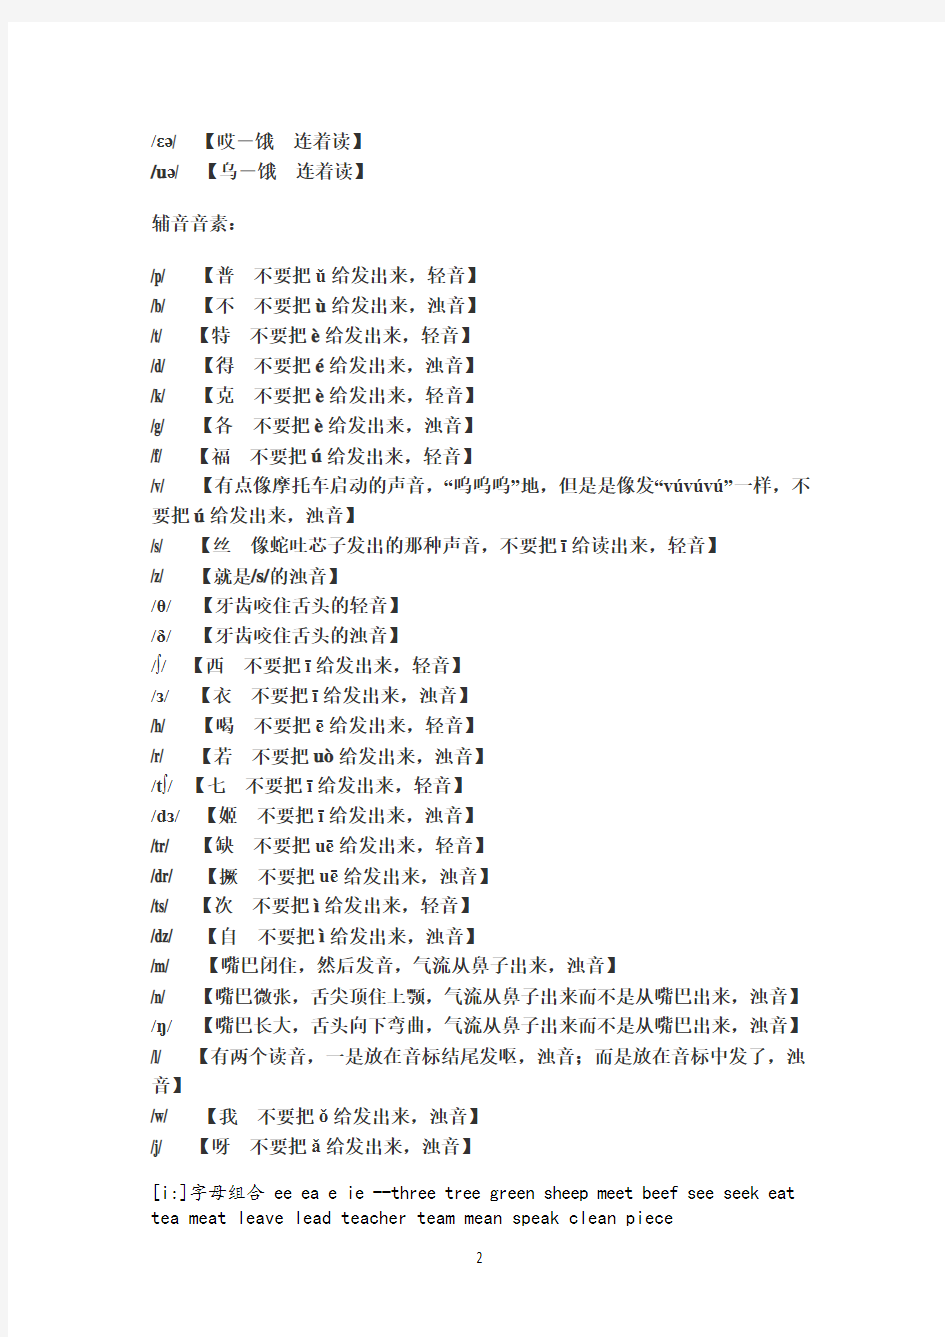 (完整)英语48个音标中文谐音读法大全,推荐文档